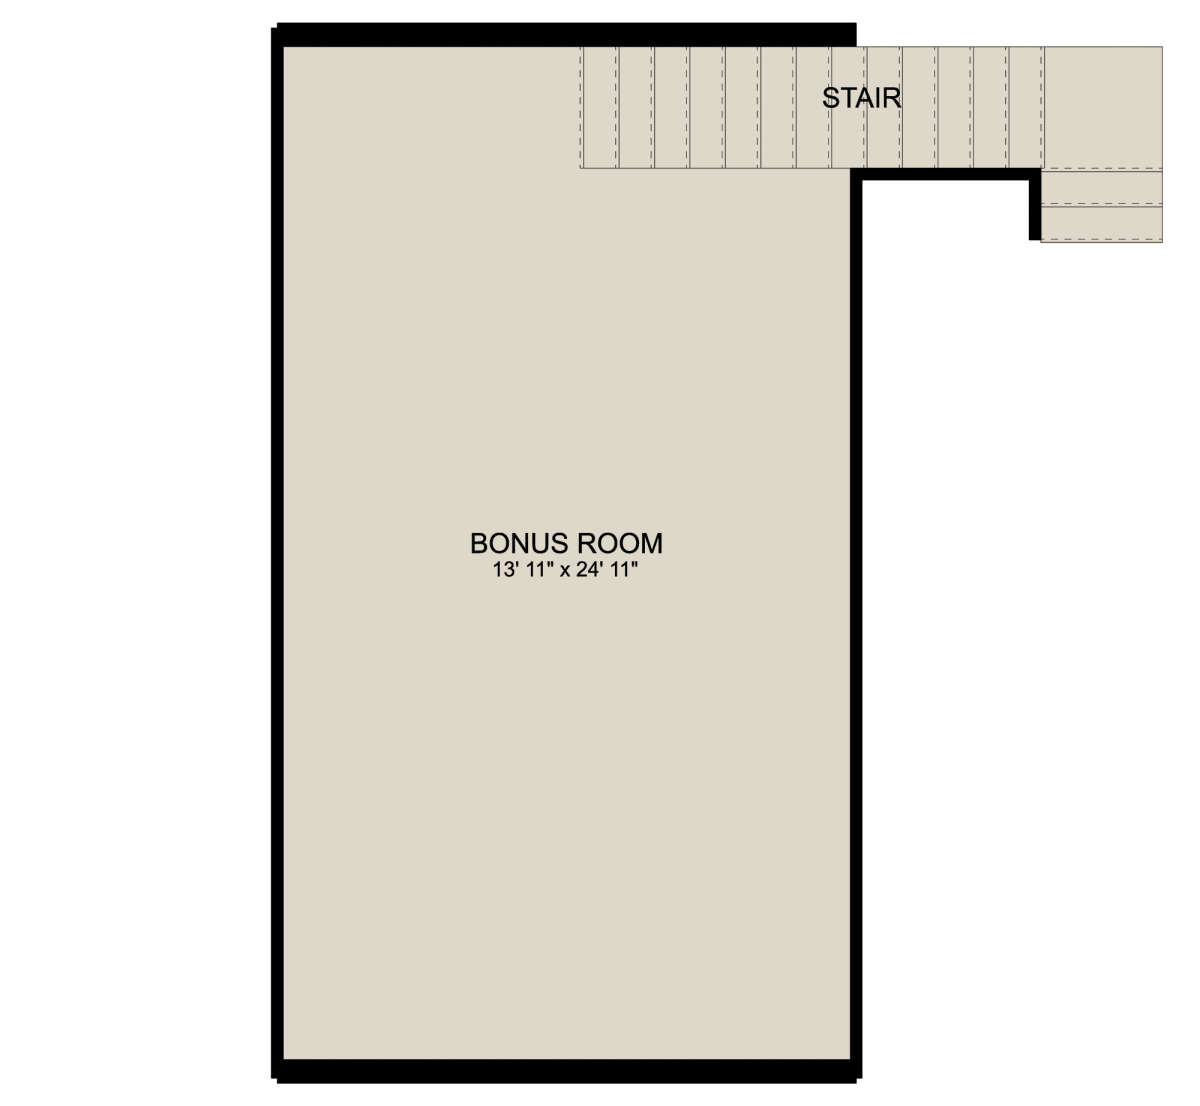 Bonus Room for House Plan #2802-00111